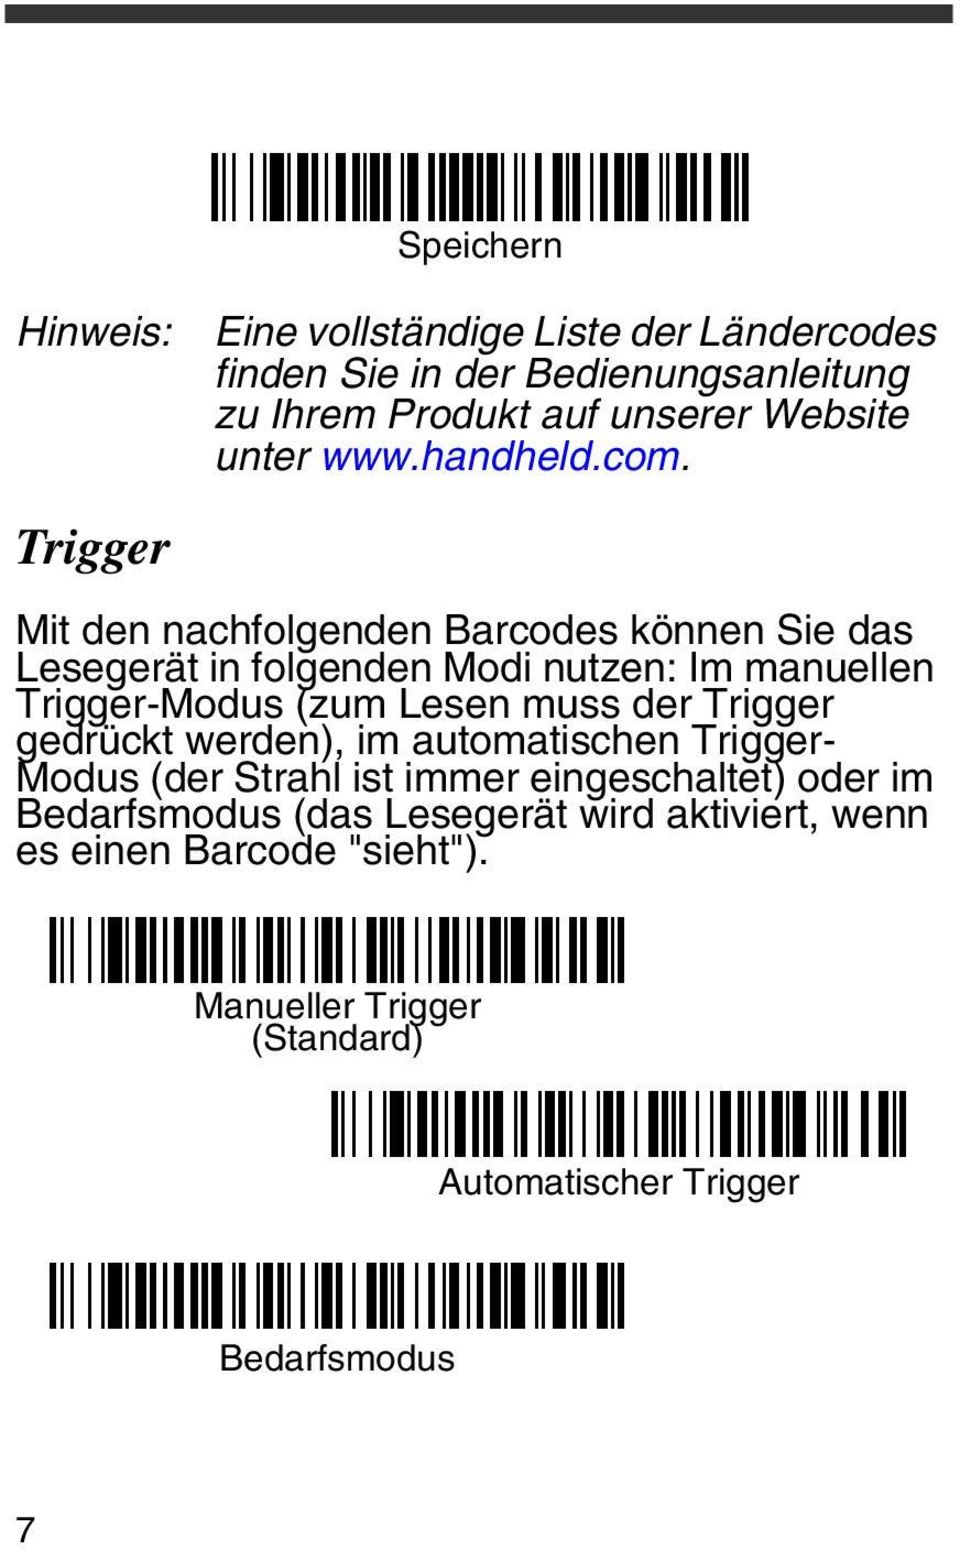 Mit den nachfolgenden Barcodes können Sie das Lesegerät in folgenden Modi nutzen: Im manuellen Trigger-Modus (zum Lesen muss der